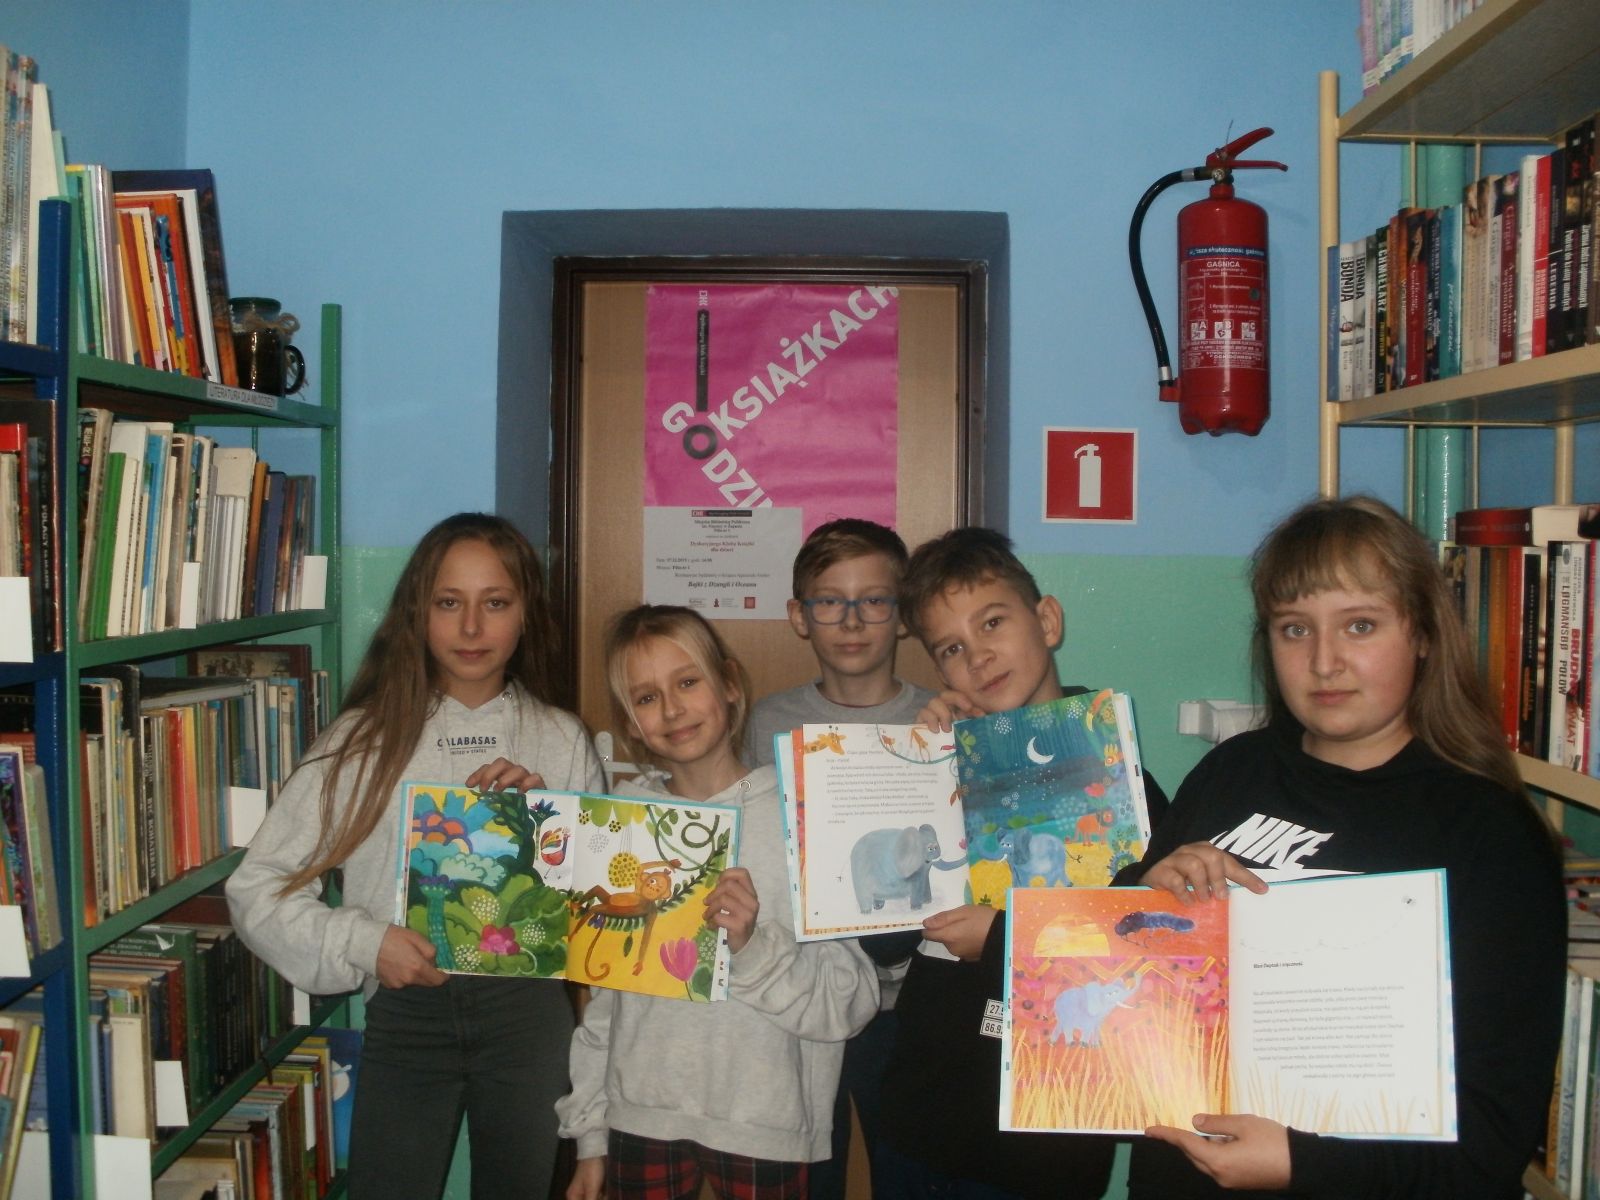 Zdjęcie. Pięcioro uśmiechniętych dzieci pozuje na tle plakatu Godzinami o Książkach. W tle regały biblioteczne z książkami.